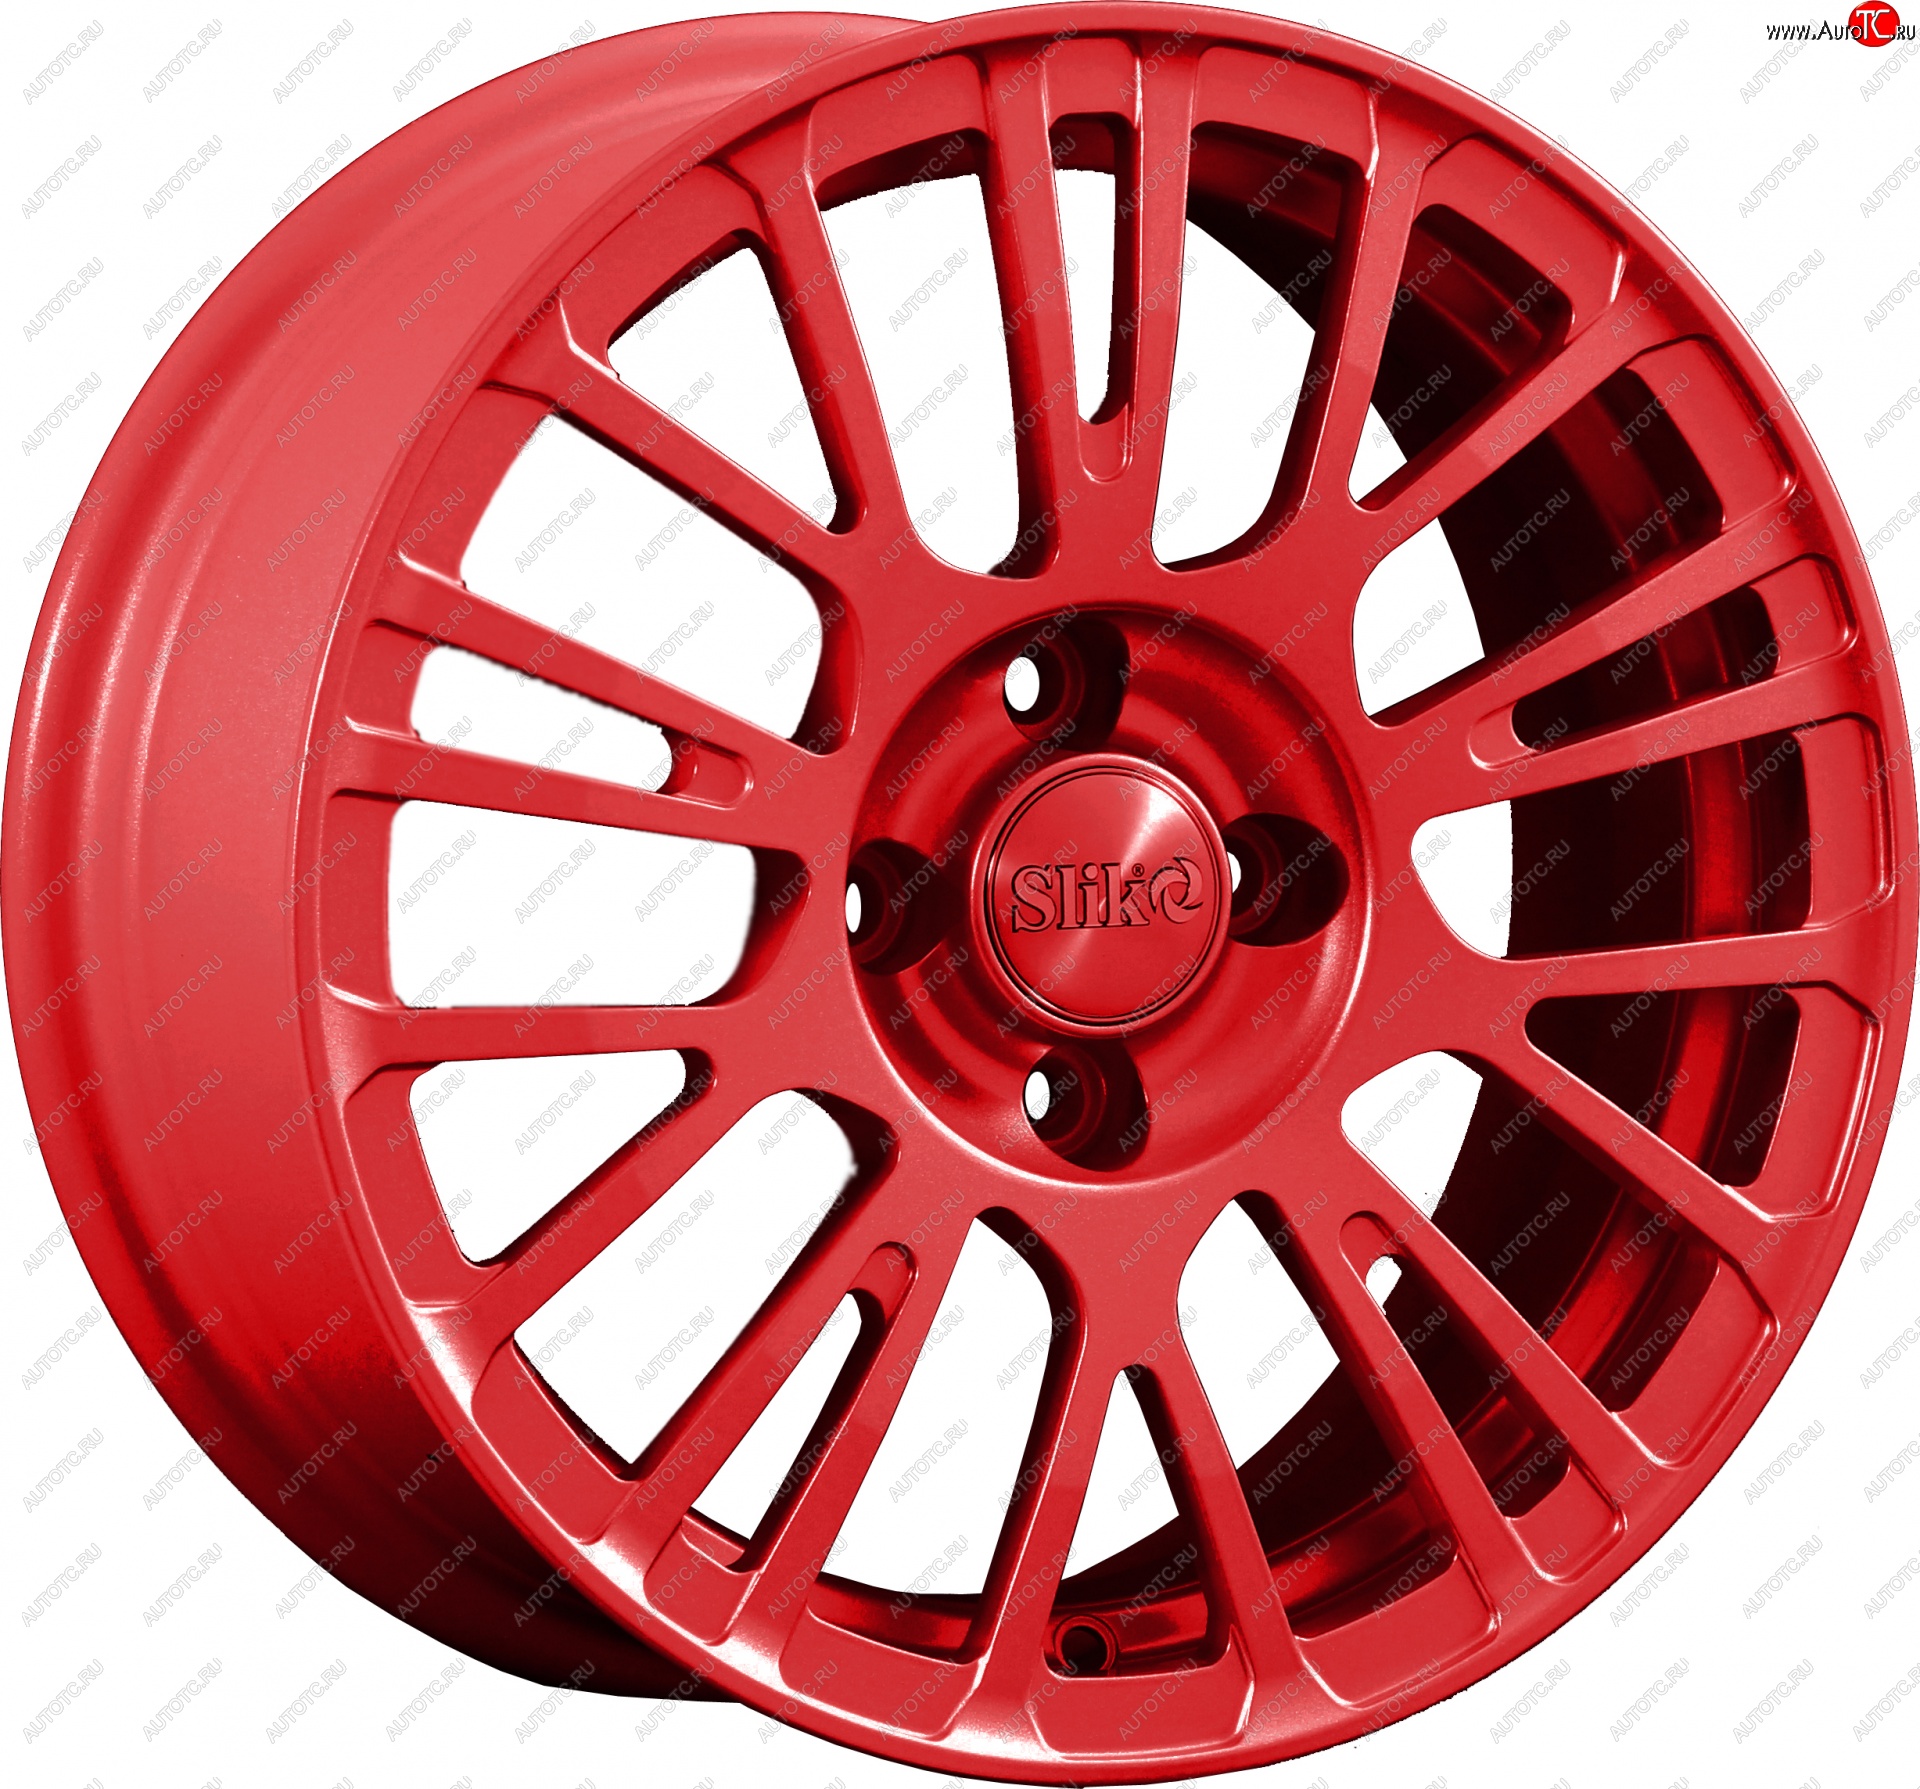 11 899 р. Кованый диск Slik Classik 6.5x15 (Красный) Уаз 315195 Хантер (2003-2024) 5x108.0xDIA108.0xET20.0 (Цвет: Красный)